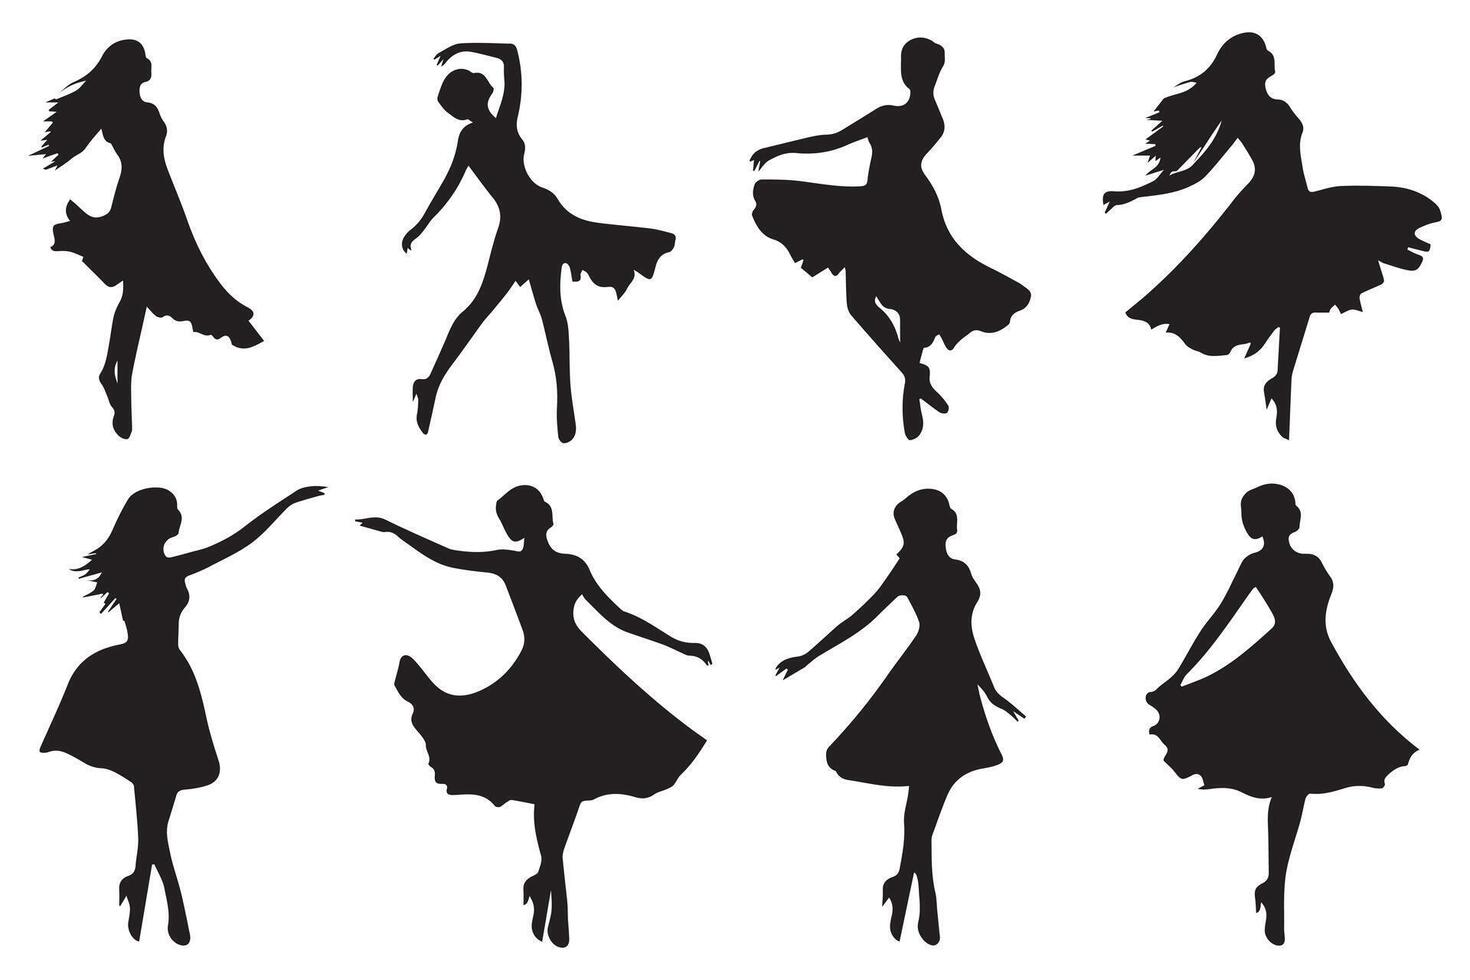 schwarz Silhouette von Tanzen Mädchen auf Weiß Hintergrund vektor